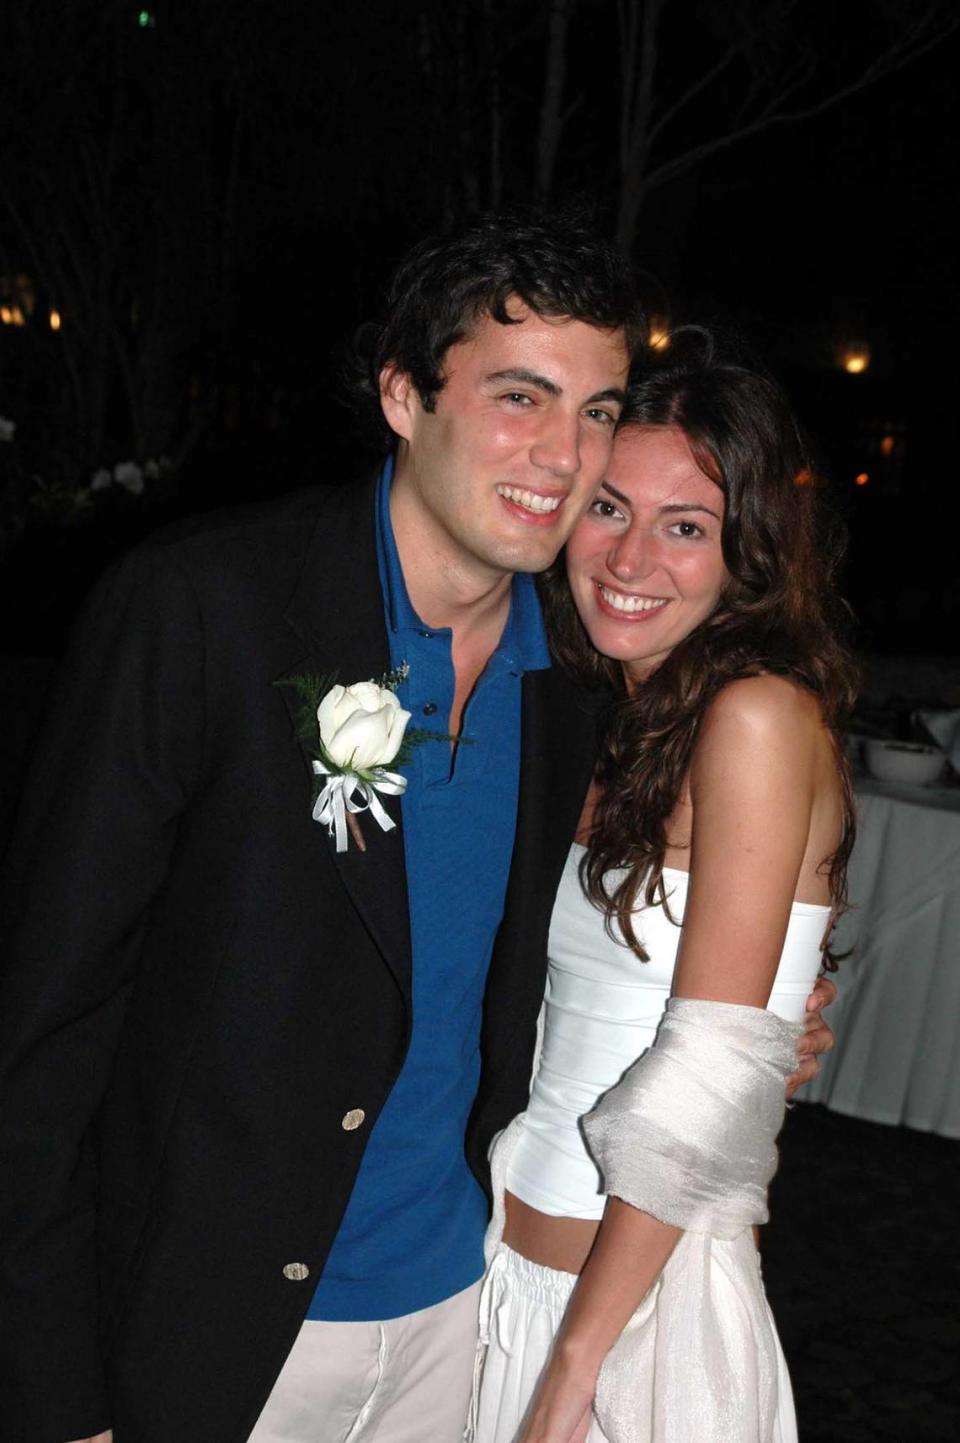 Fabian Basabe and Martina Borgomanero were married at the Casa de Campo resort in the Dominican Republic in 2005.